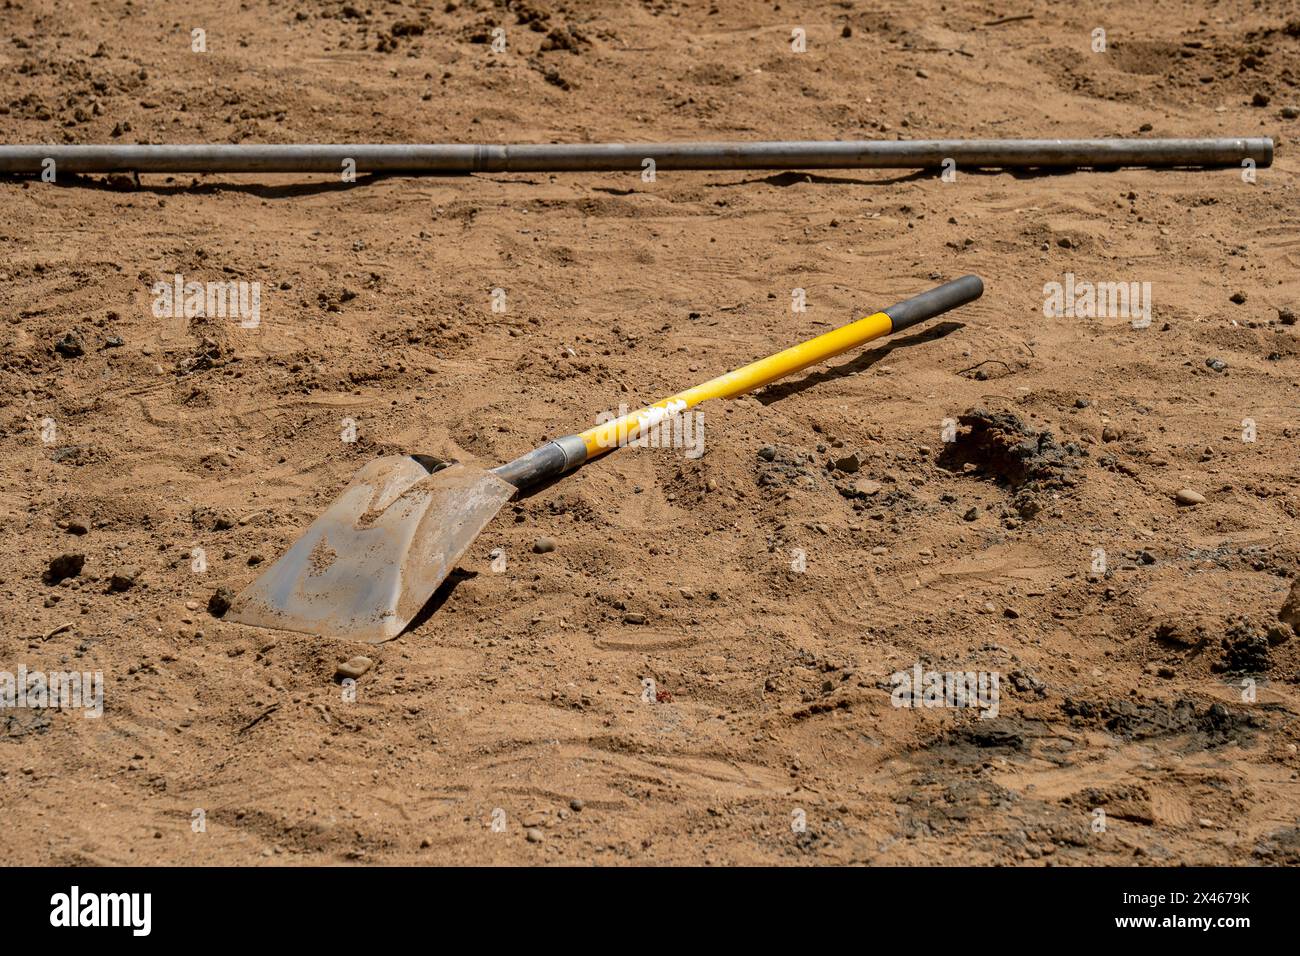 Eine Schaufel mit gelbem Griff liegt im braunen Schmutz, in der Nähe eines Metallrohrs, auf der Baustelle. Ein Arbeitsgerät zum Aufräumen und Bewegen von Erde. Stockfoto